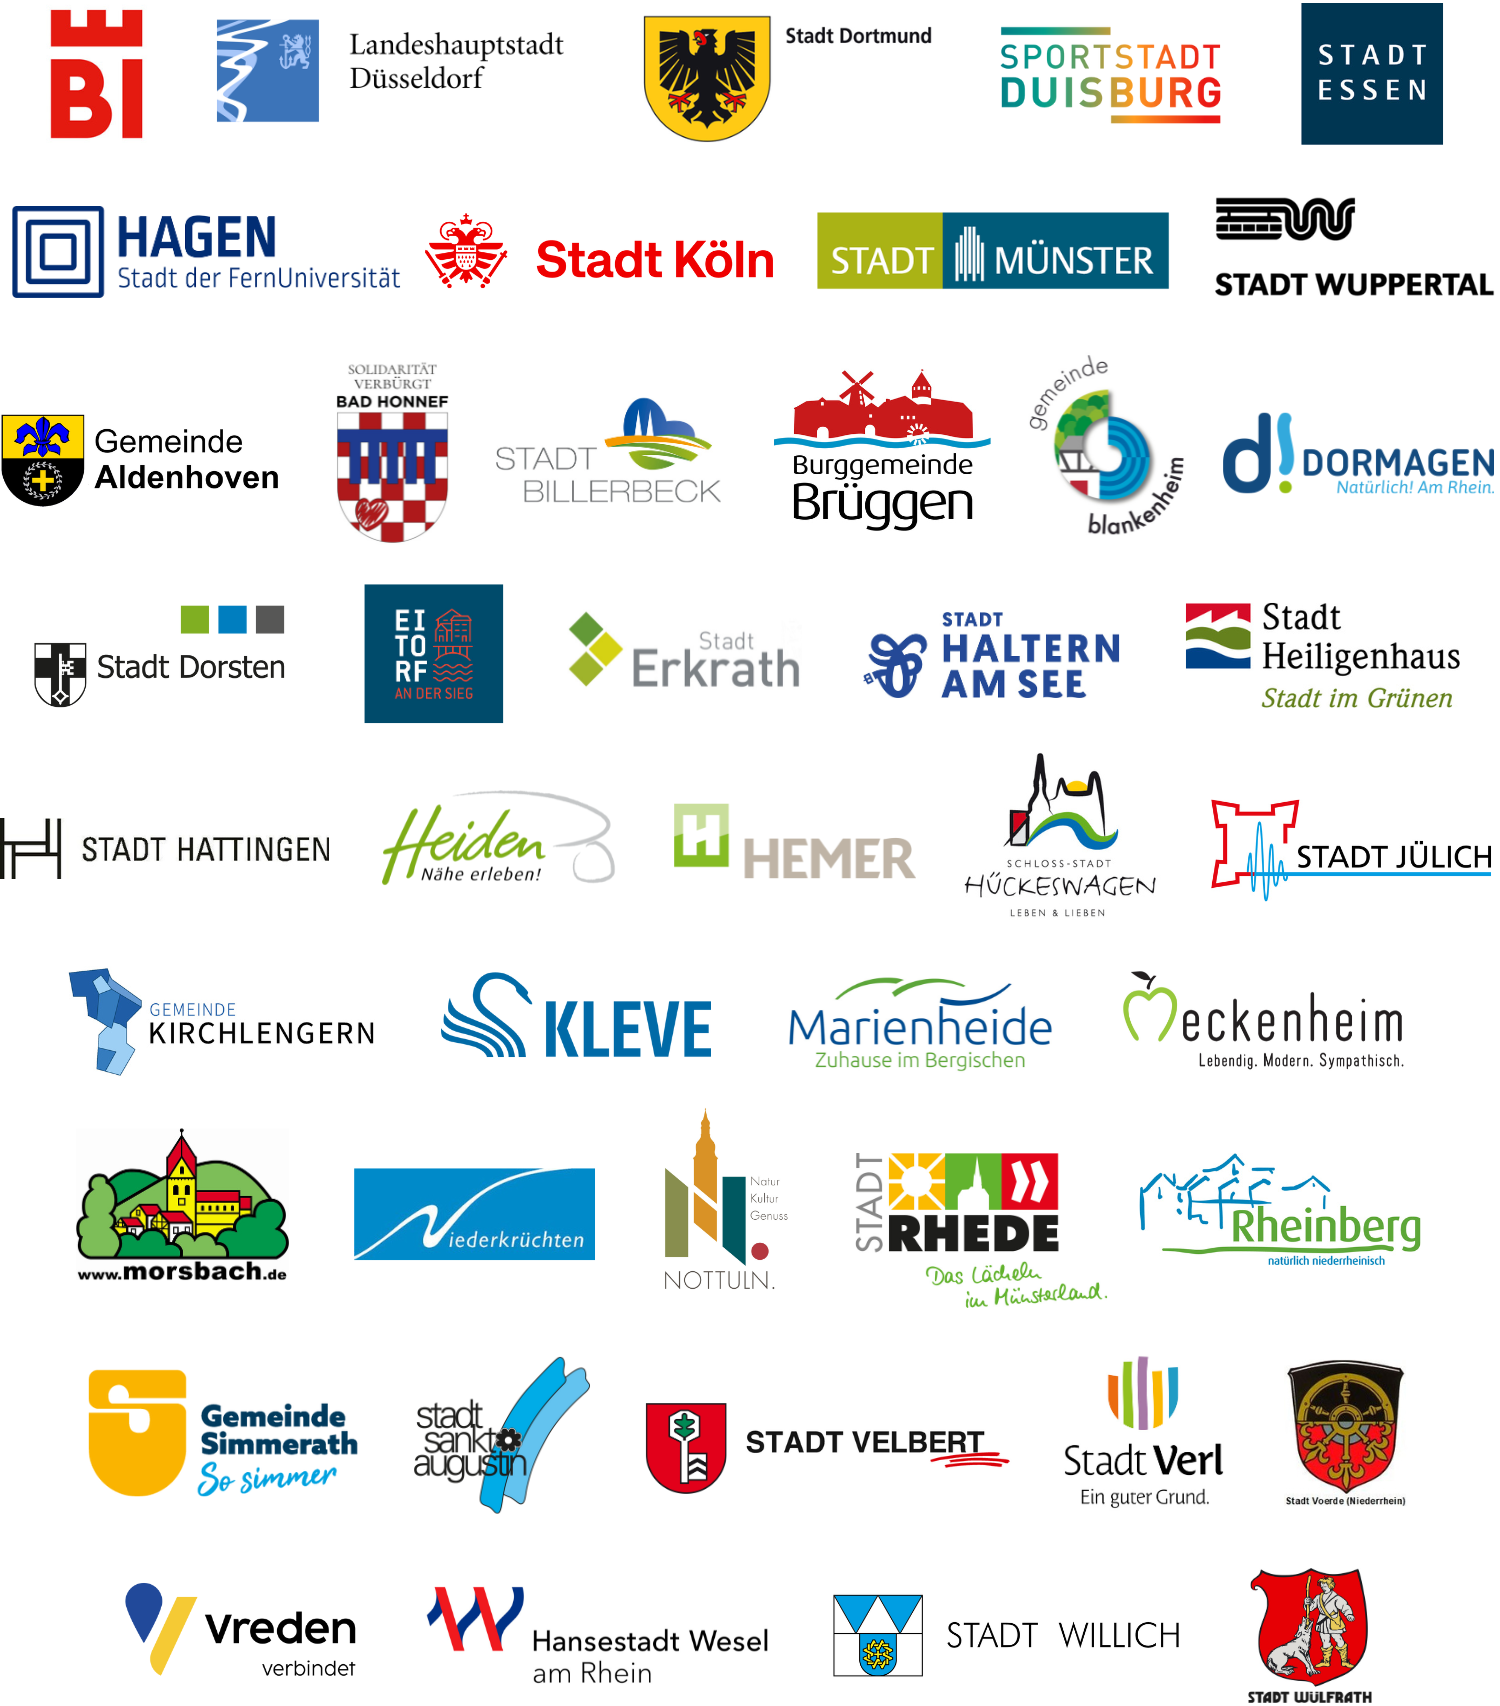 Eine Collage von Logos der teilnehmenden Kommunen